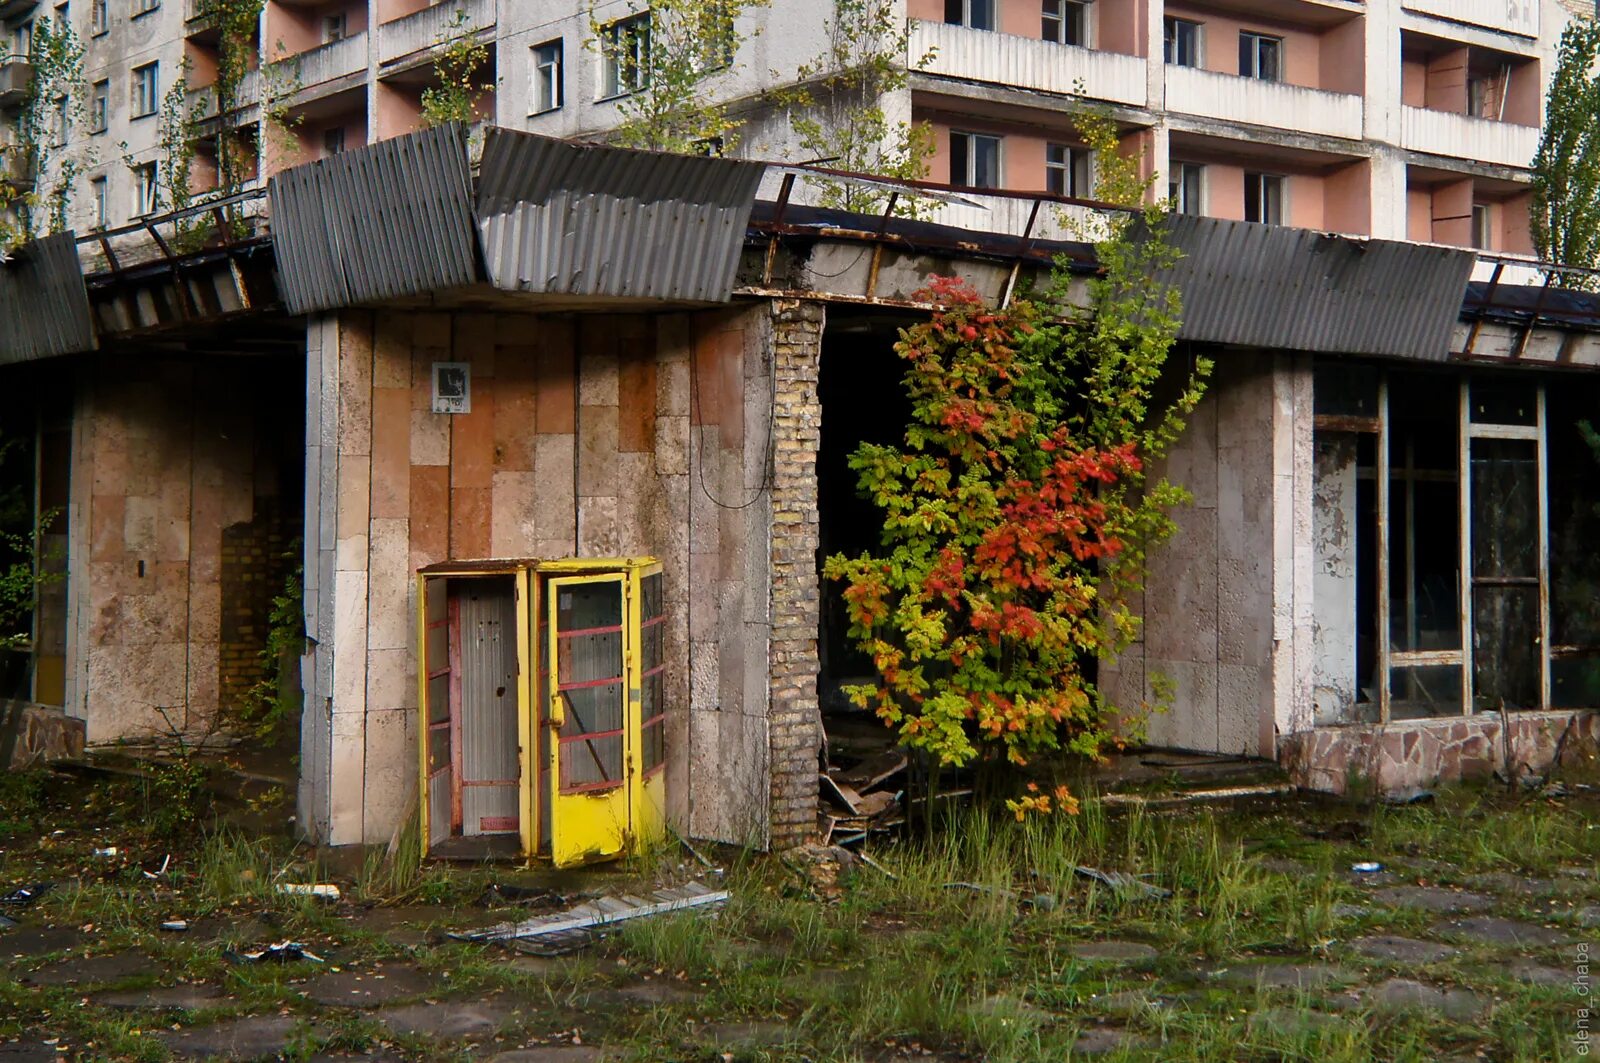 Чернобыль зона отчуждения Припять. Припять зона отчуждения сейчас. Чернобыль зона отчуждения город. Припять Чернобыль ЧАЭС зона отчуждения.